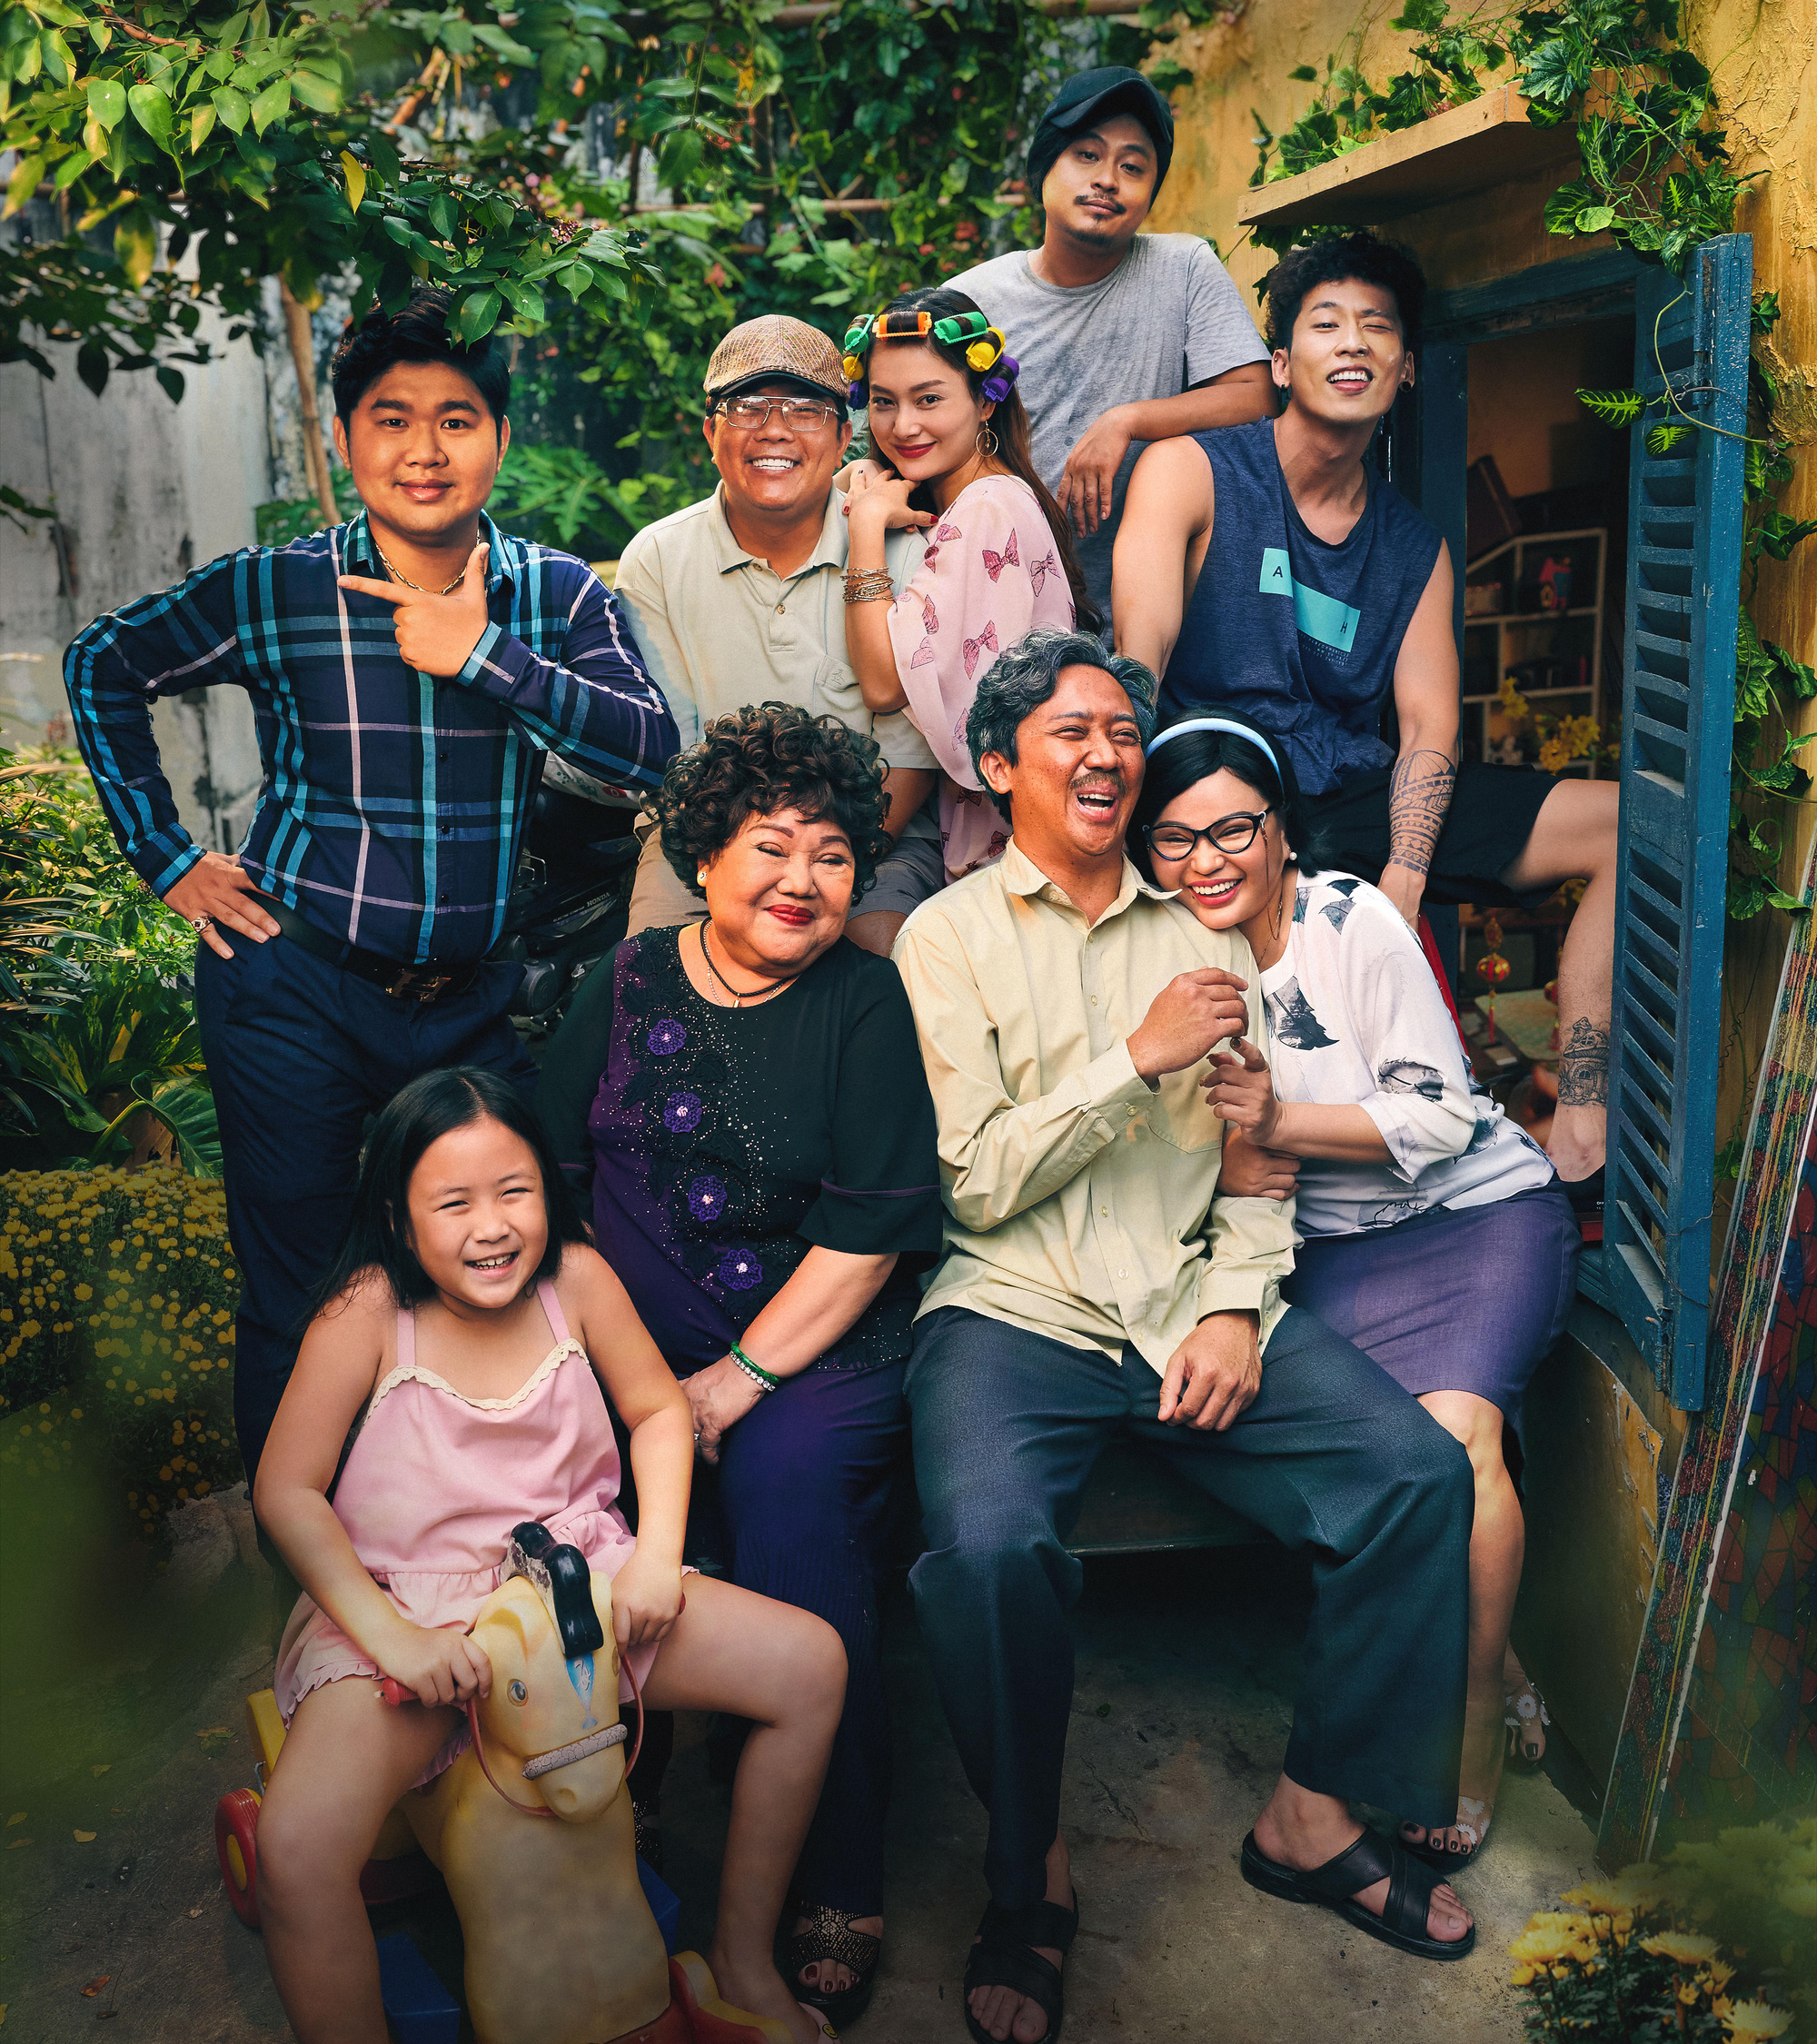 Hãy thưởng thức những tác phẩm điện ảnh Việt Nam tuyệt vời. Với các diễn viên trẻ tài năng, những bộ phim này đem lại những câu chuyện đầy cảm xúc và tình cảm. Bạn sẽ không thể ngừng xem khi một tinh túy văn hóa Việt Nam được tái hiện trên màn ảnh.